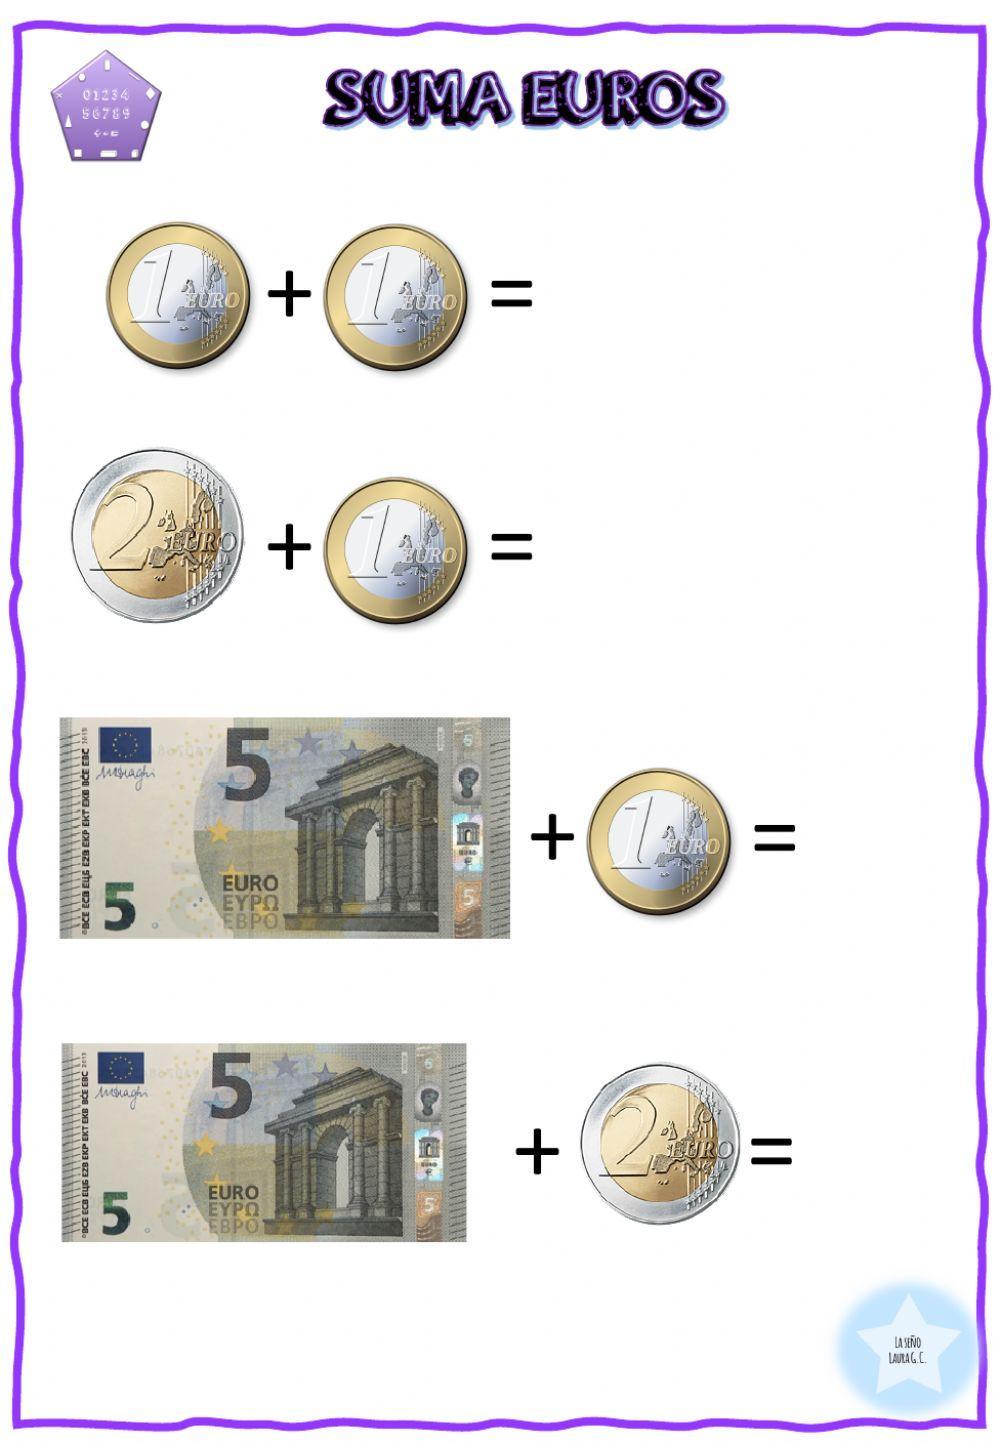 Suma euros